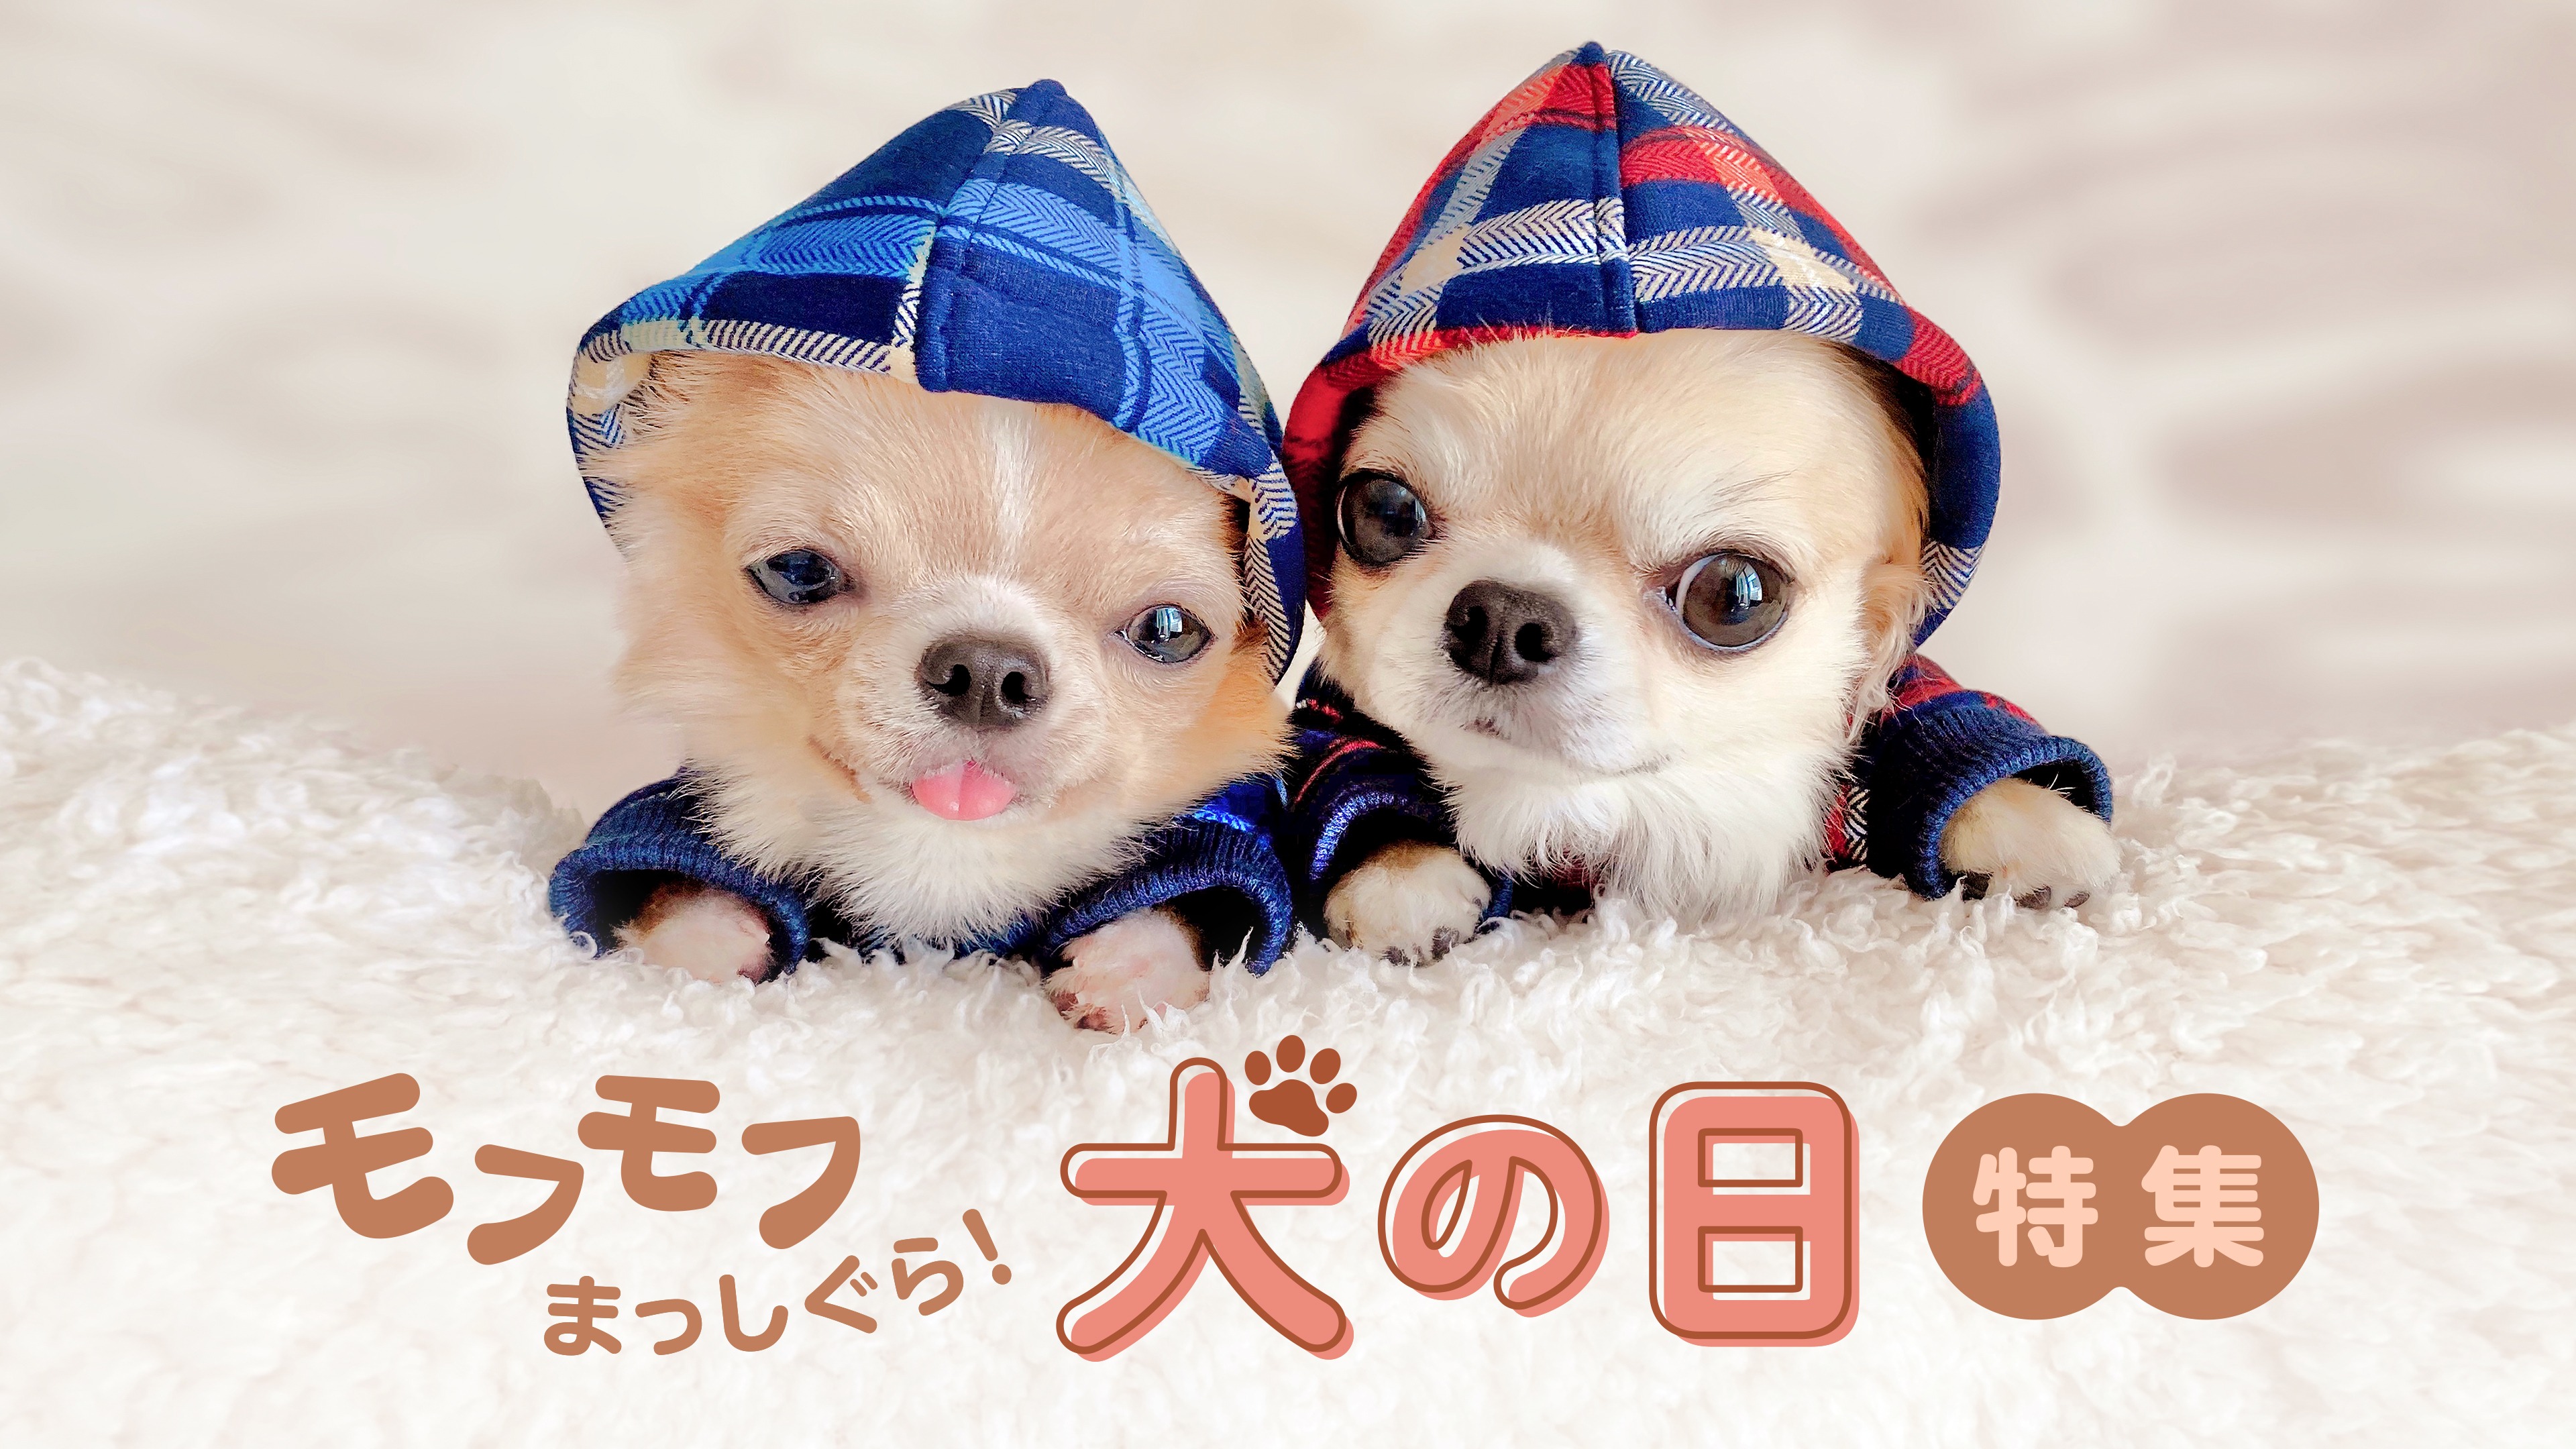 Hulu Japan Sur Twitter 今日は 犬の日 なので マリと子犬の物語 ウォレスとグルミット ハラス のいた日々 きな子 ひまわりと子犬の7日間 ハチ公物語 ペット クイール など 特集はコチラ T Co Xfaowotznx 今年もあと2ヶ月